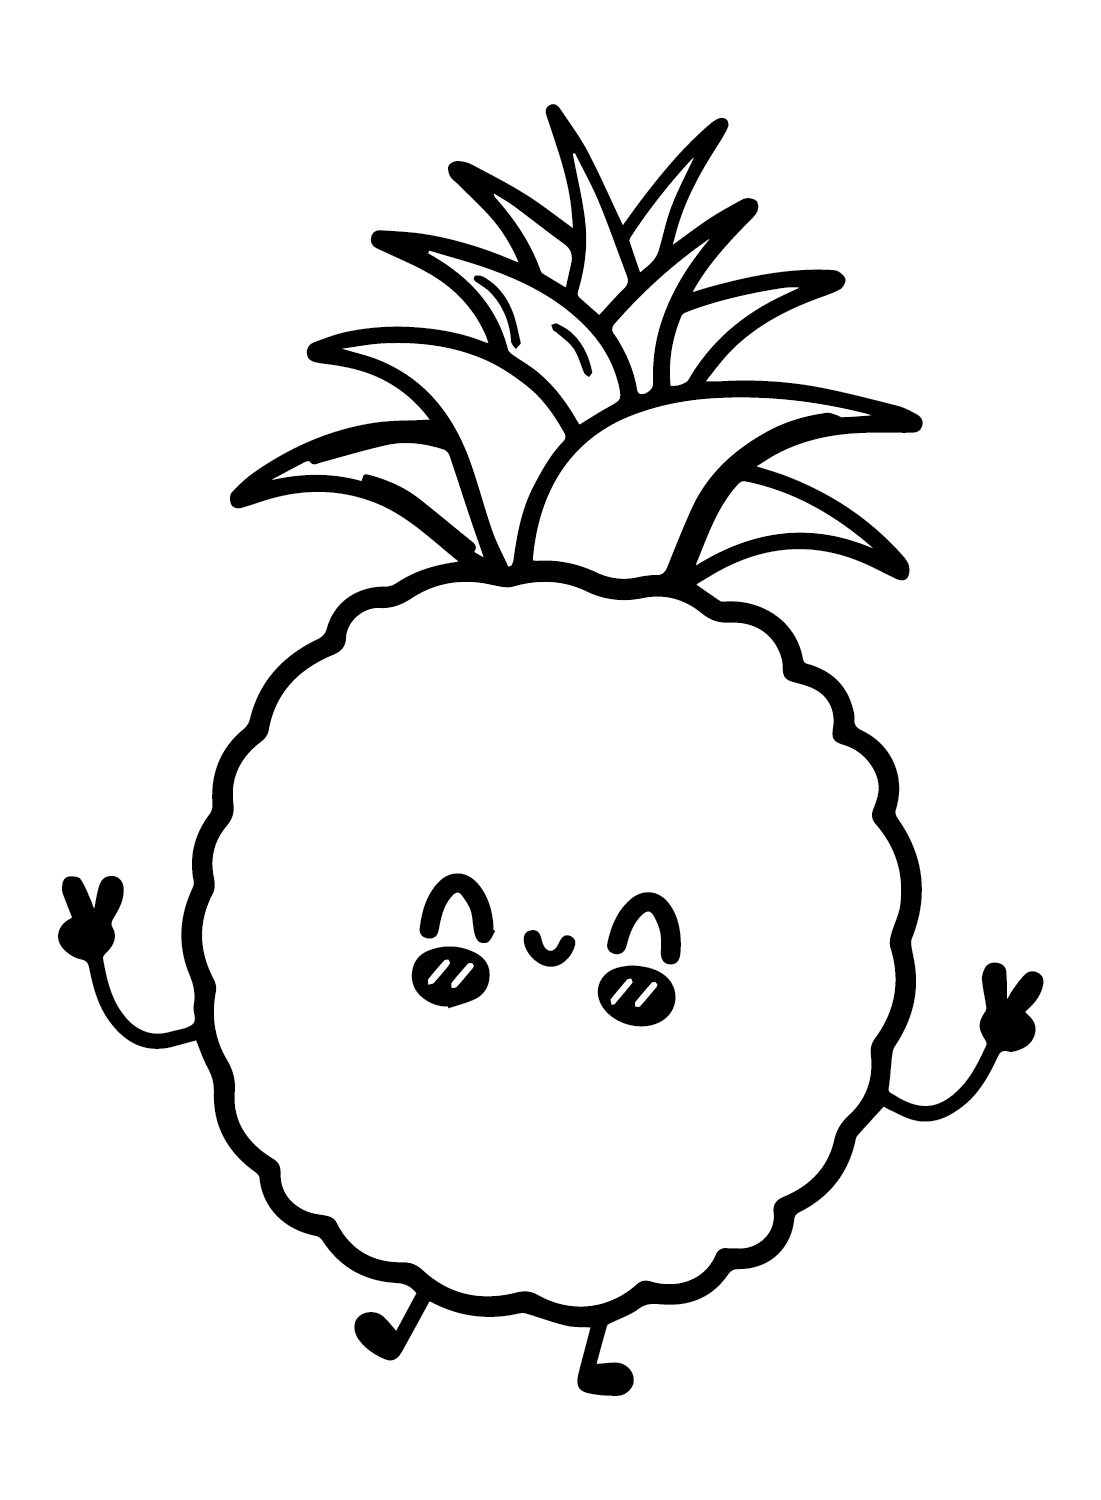 菠萝 可爱的菠萝